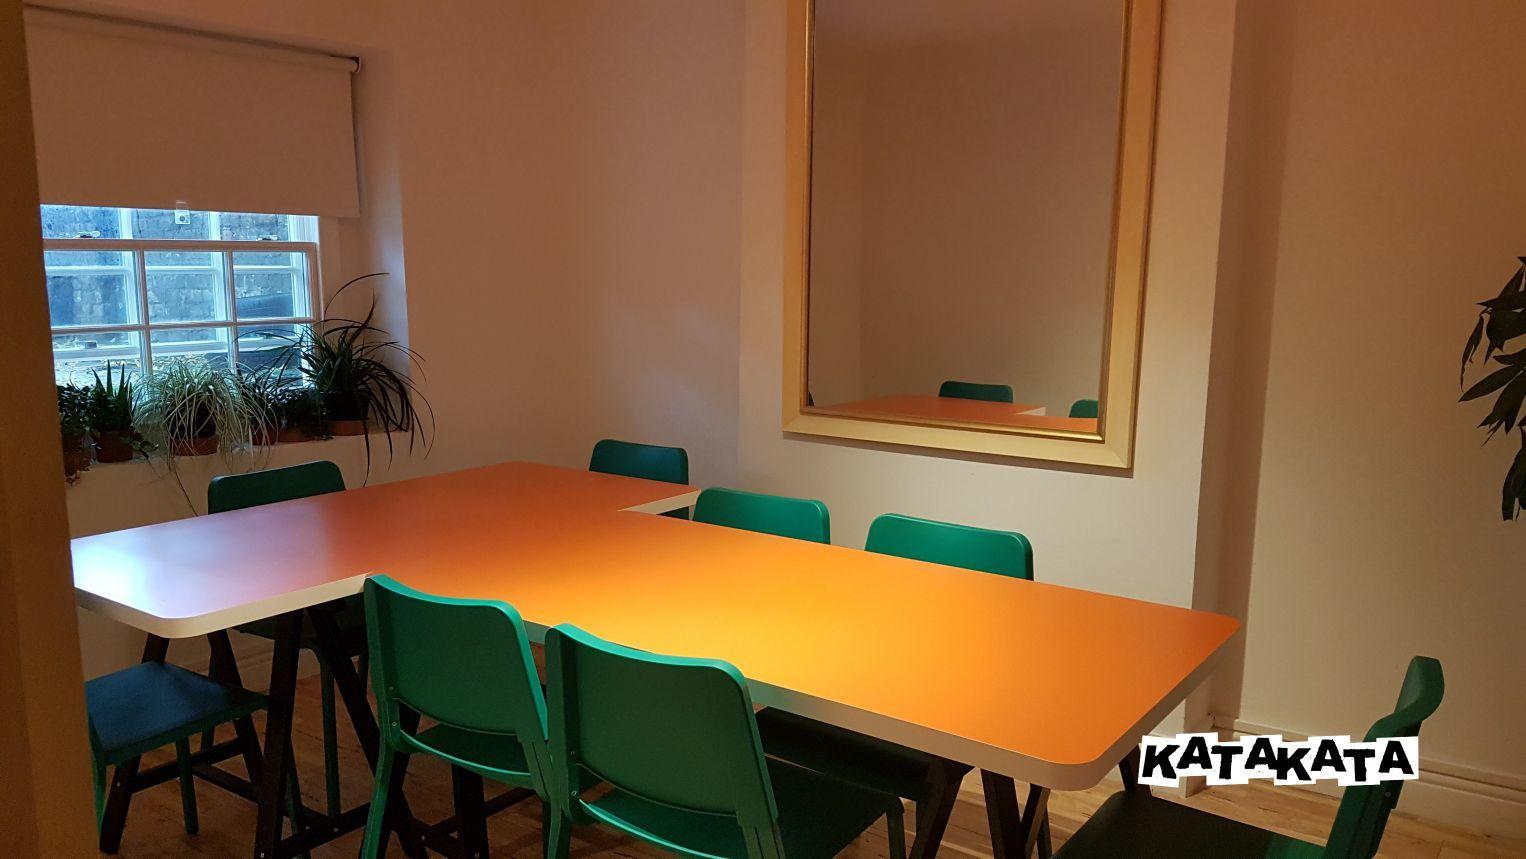 Katakata Meeting room, Katakata Brixton photo #1